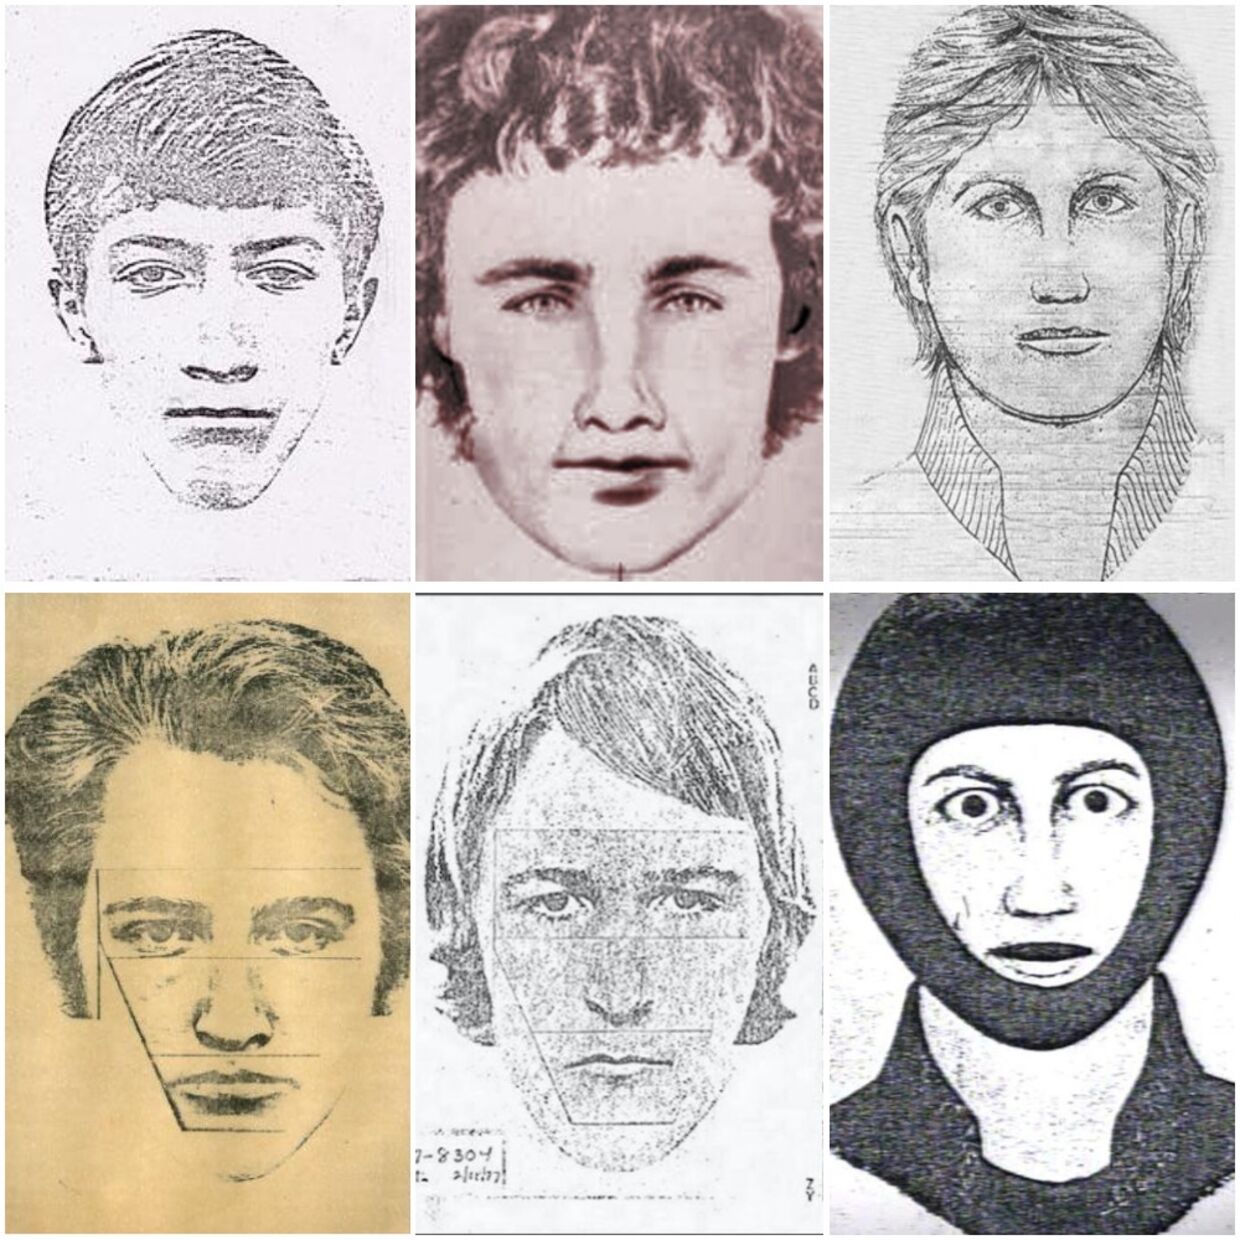 Der blev i årenes løb lavet adskillige fantomtegninger af The Golden State Killer.